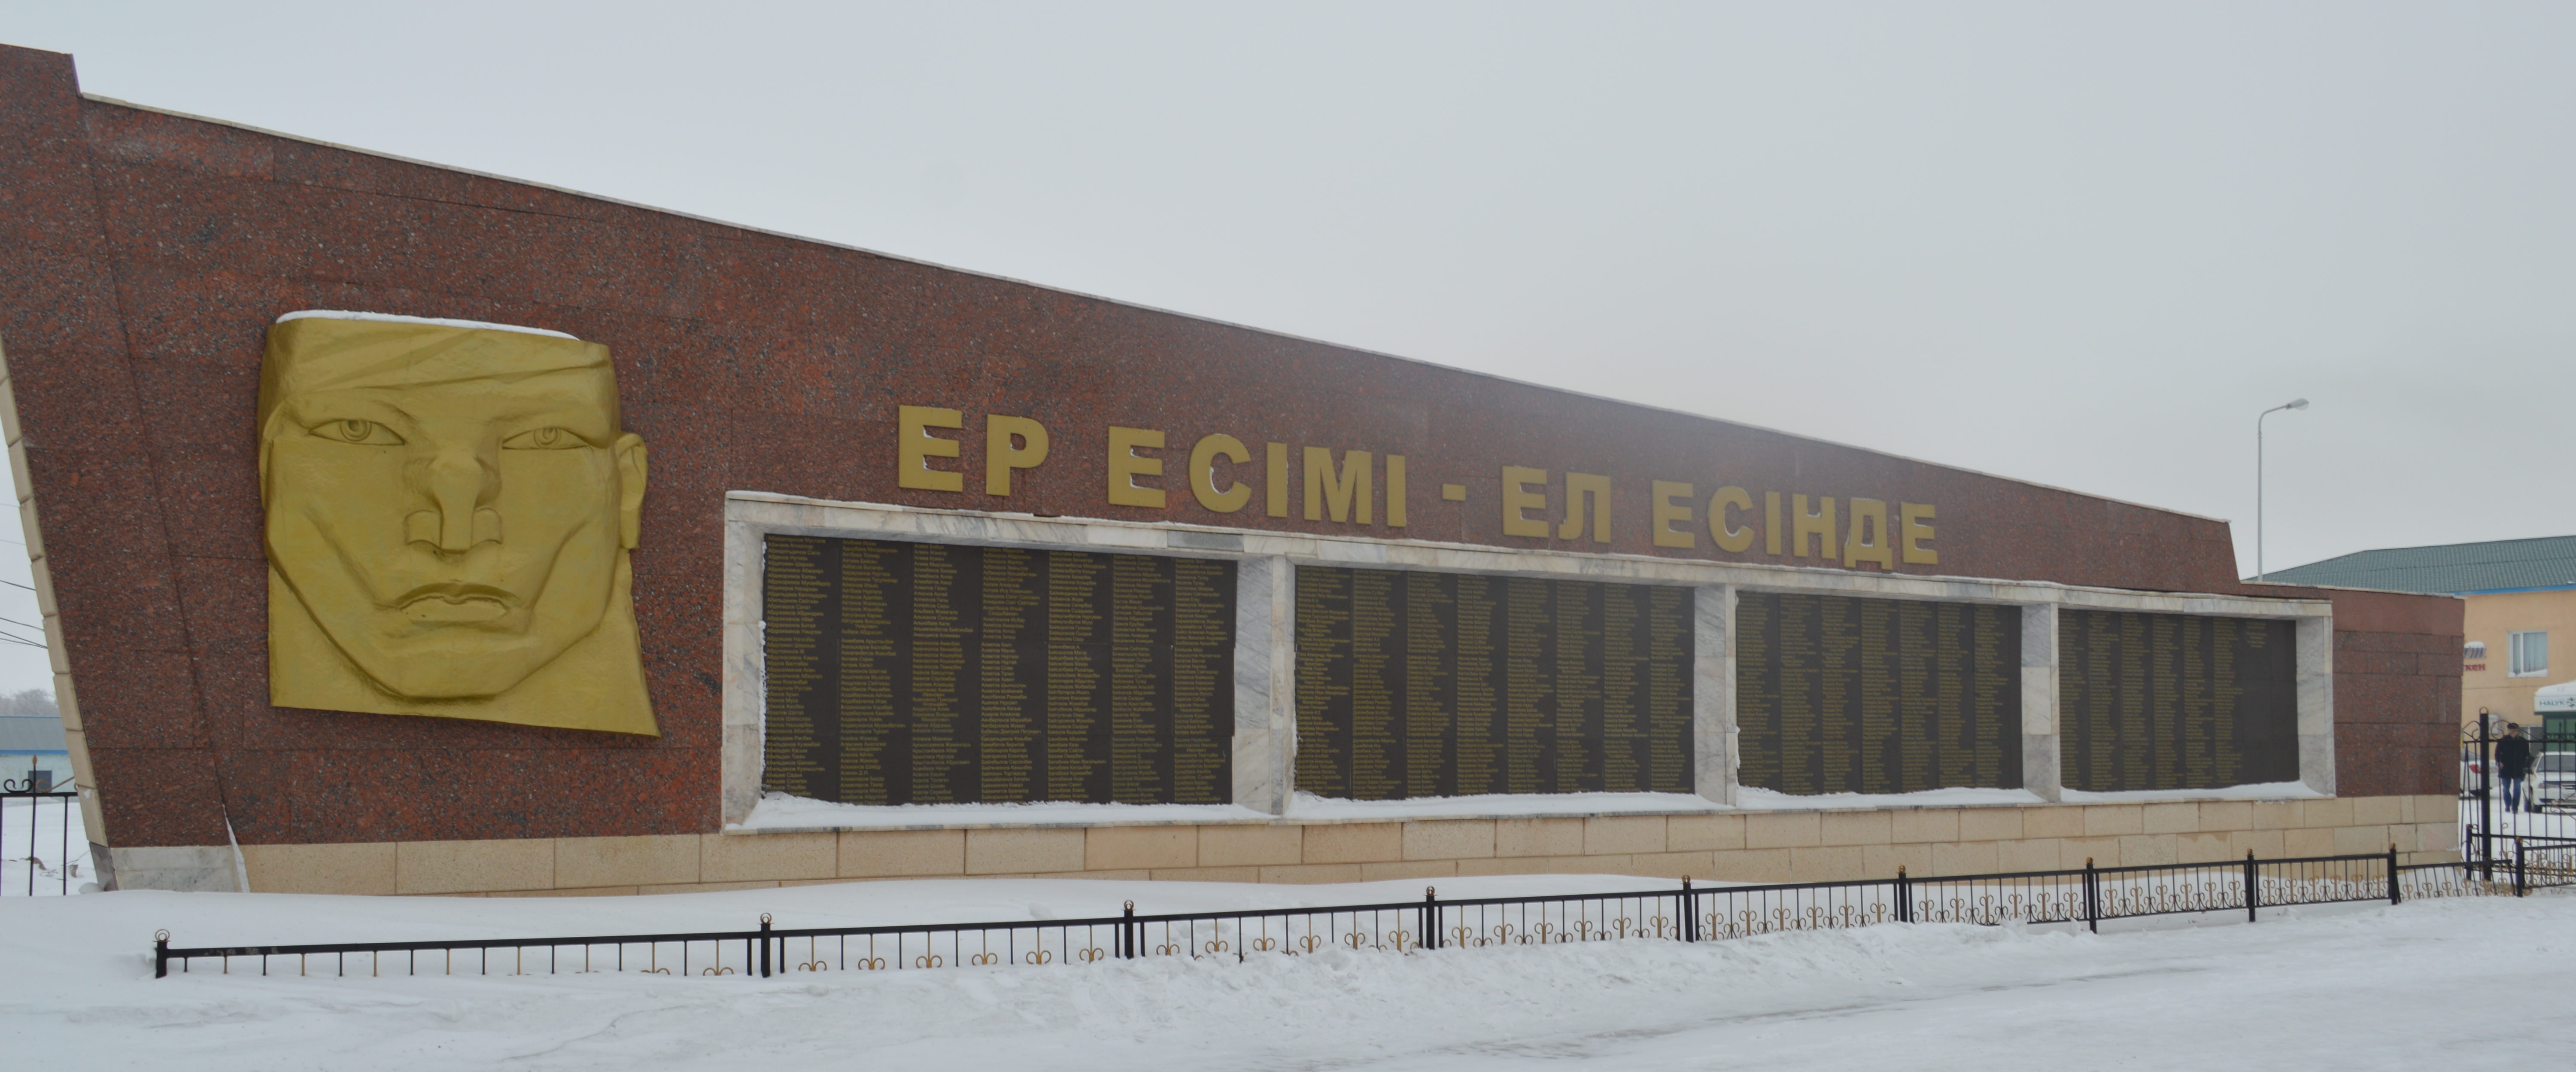 с. Улытау. Мемориал «Мое имя - память народа» был открыт в 1995 году к 50-летию Великой Победы.